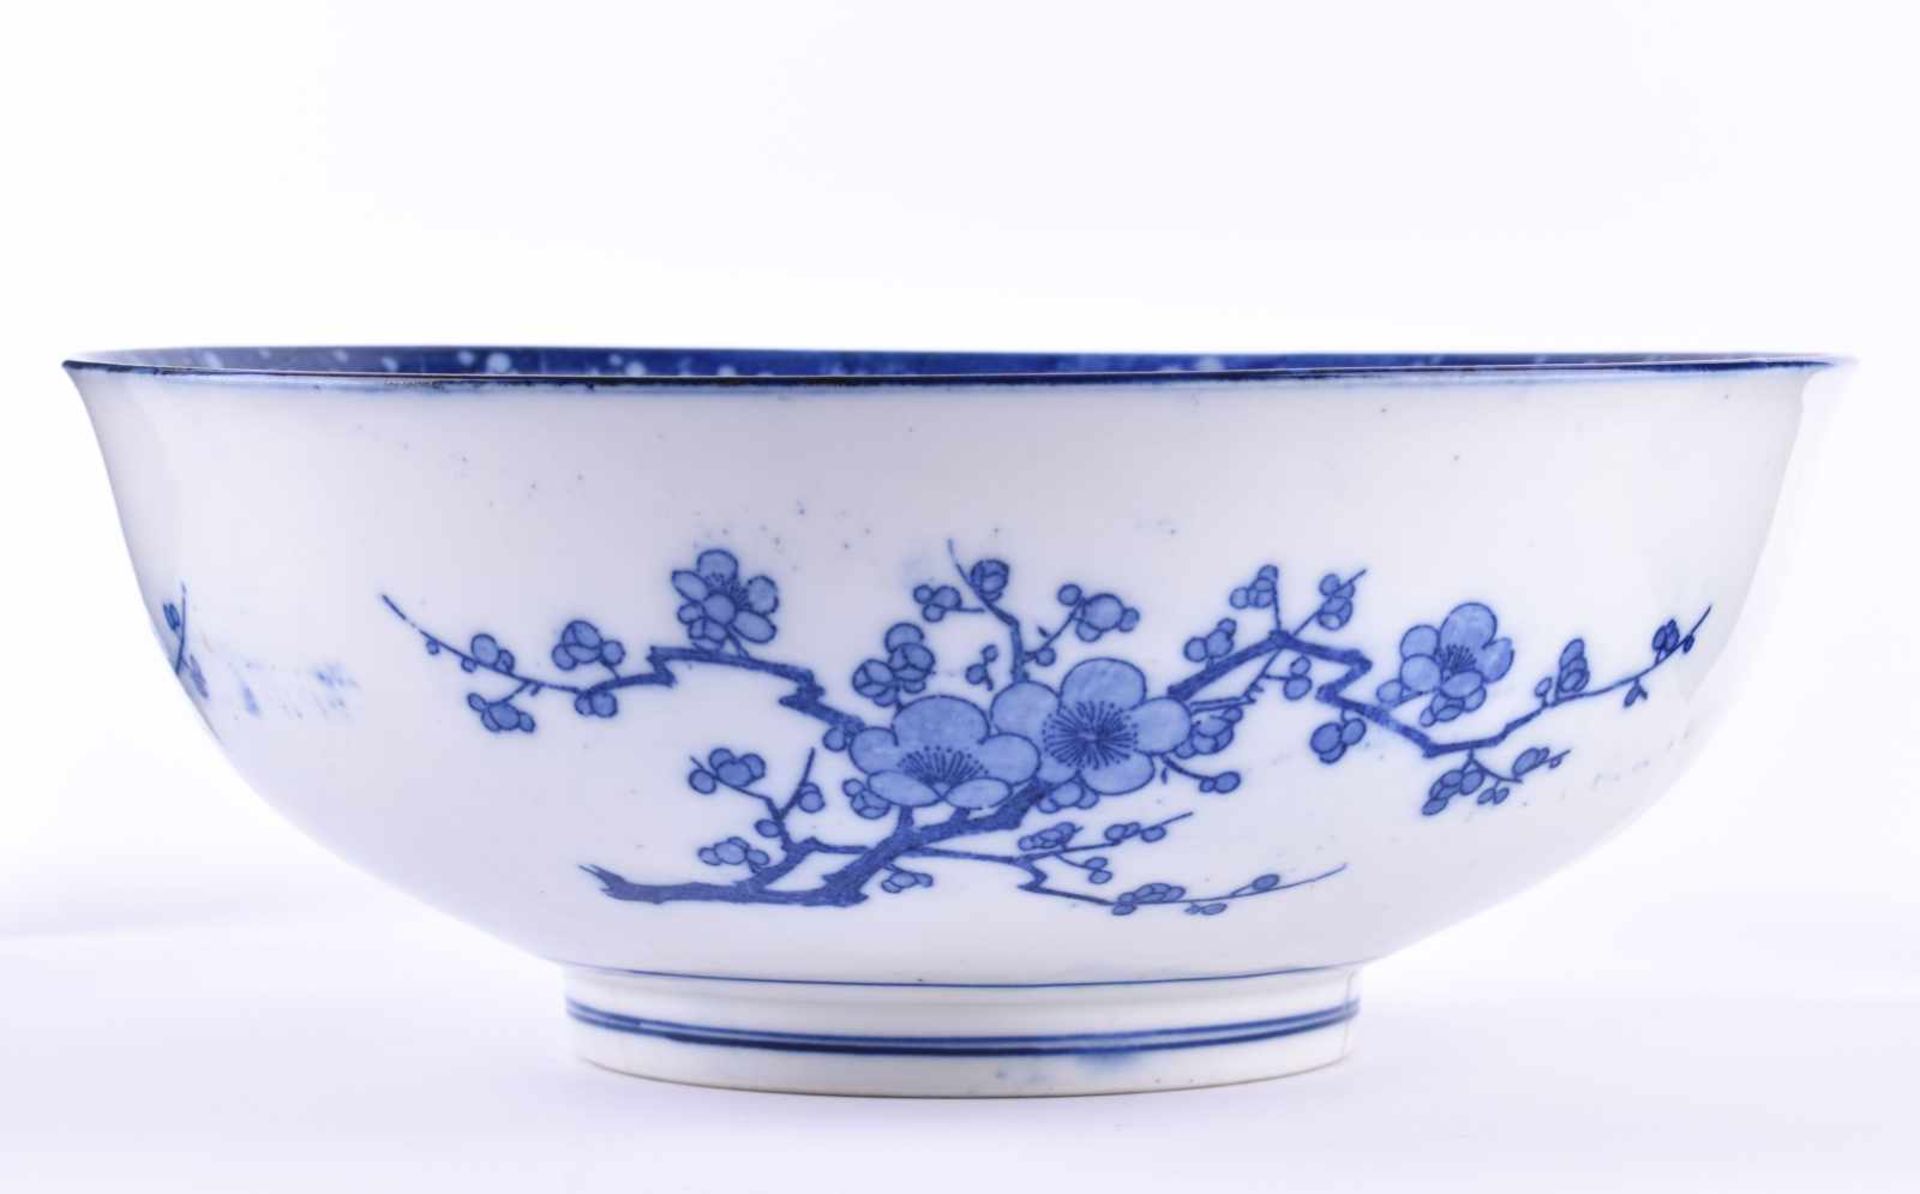 Schale China Qing Dynastiemit blau-weiß Malerei verziert, unterhalb sichtbare Haarrisse, blaue 6 - Image 2 of 5